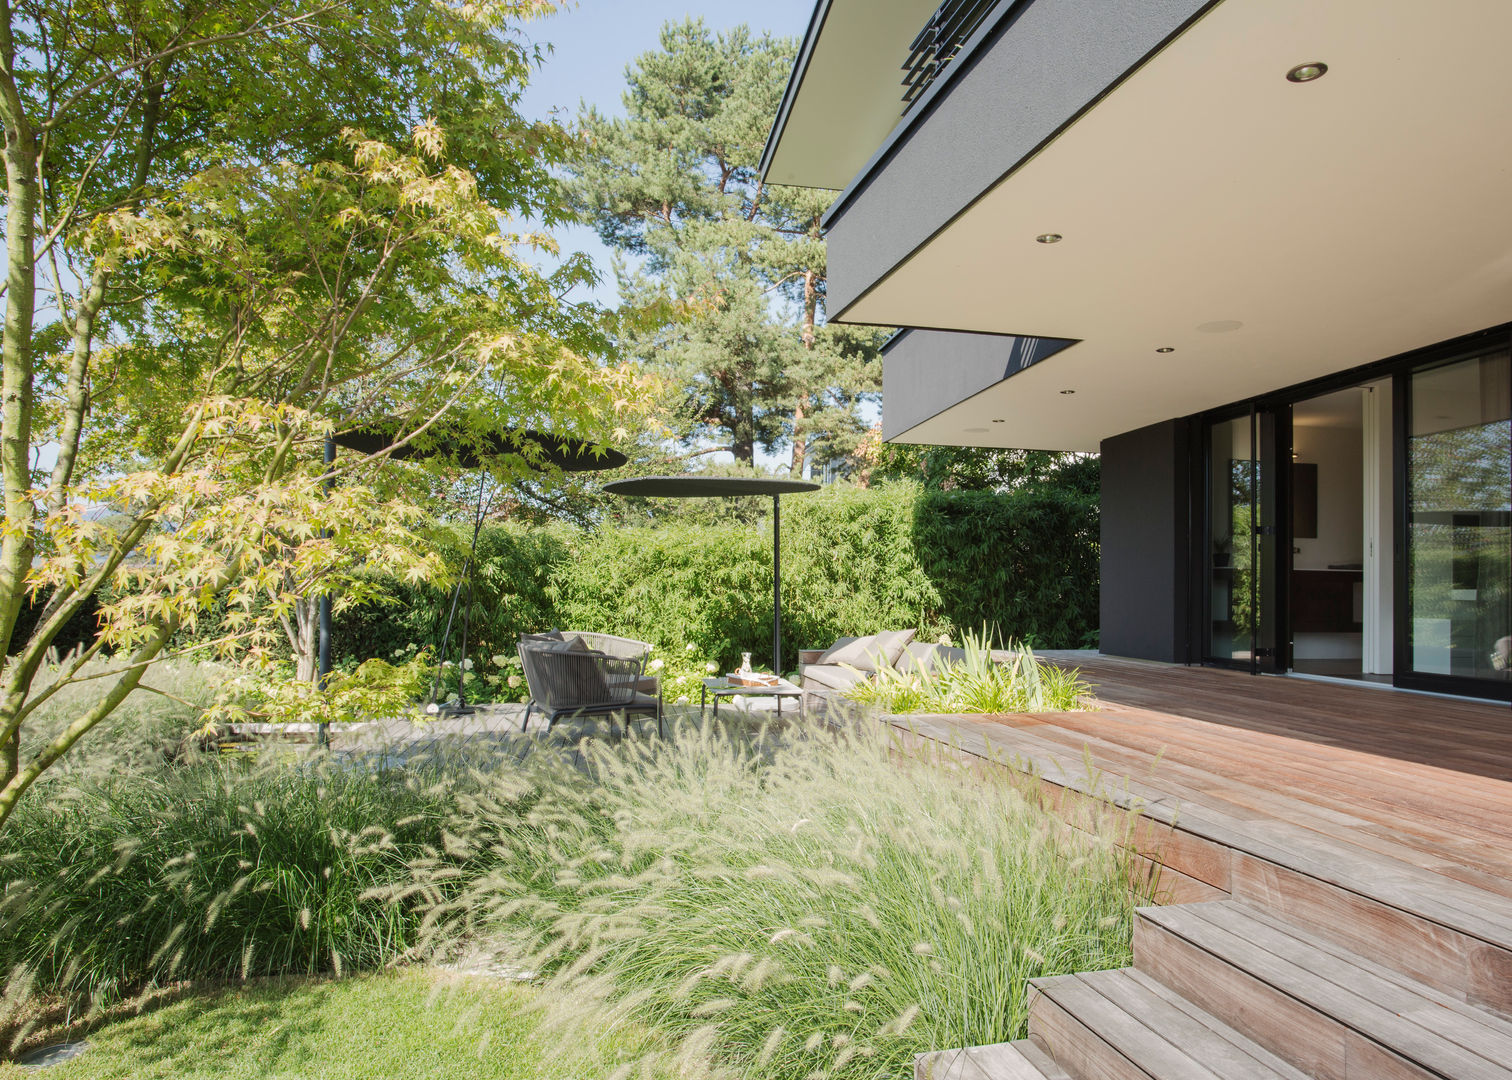 Objekt 336: Traumhaftes Einfamilienhaus mit Panoramablick , meier architekten zürich meier architekten zürich 庭院 木頭 Wood effect